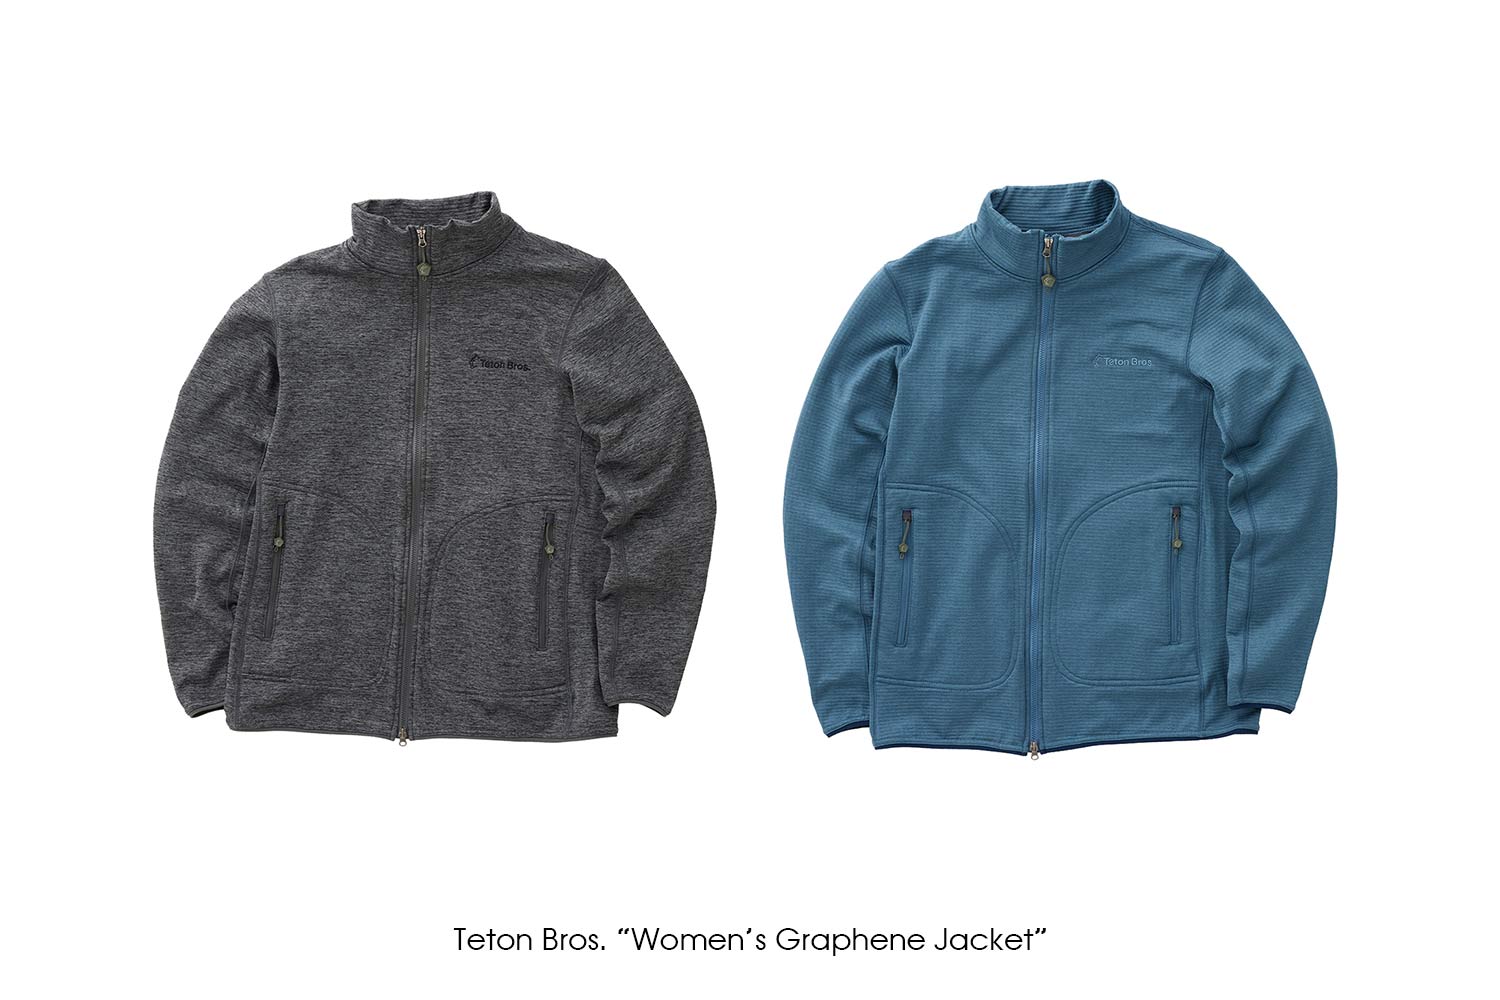 TetonBros. "Women's Graphene Jacket"